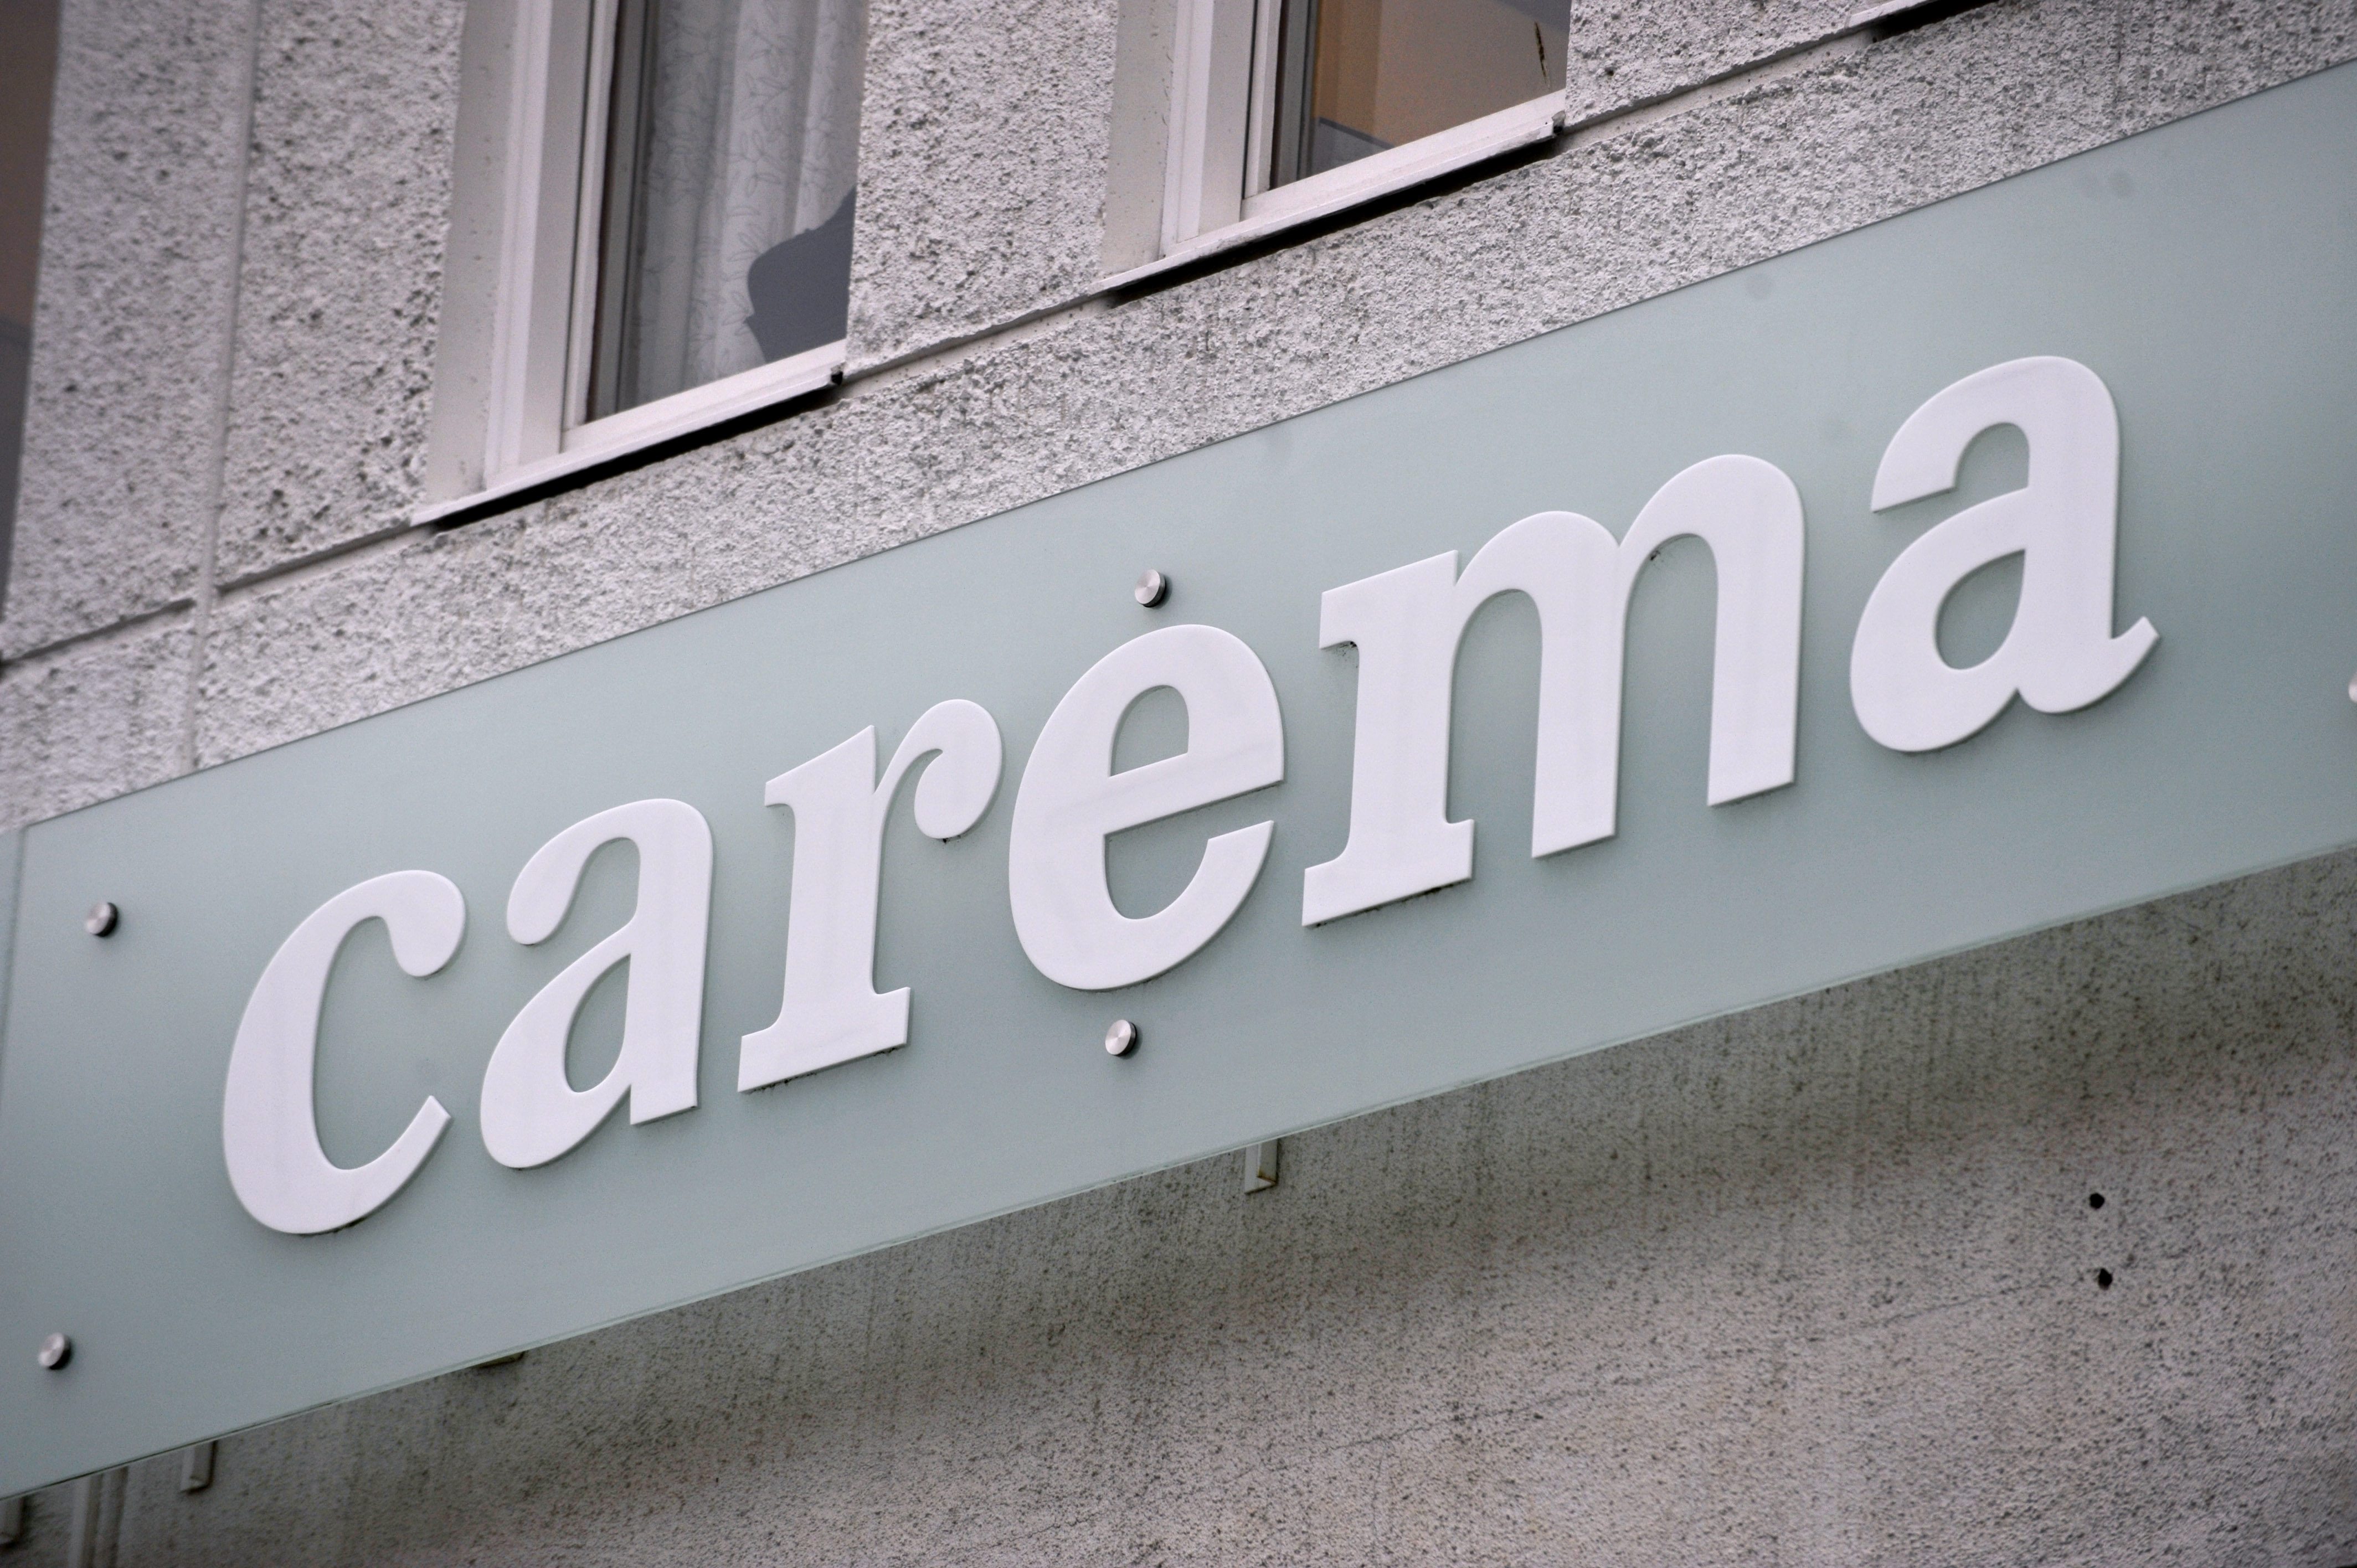 Carema i Umeå skakas nu efter att det avslöjats att en man blivit sittande med flera benbrott på ett boende.